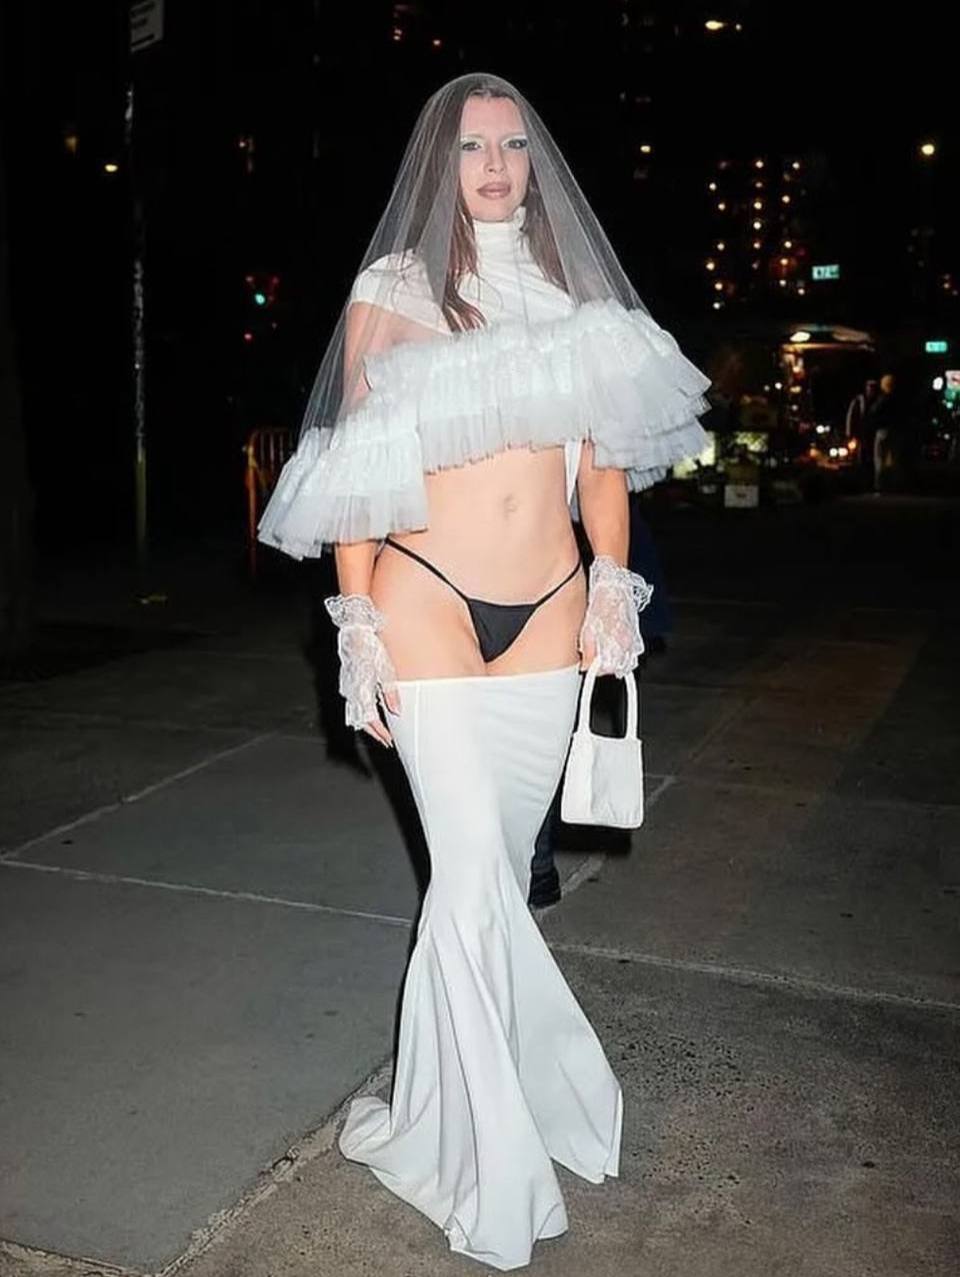 Джулия Фокс появилась на светской вечеринке в очень необычном платье невесты, прикрывающем только плечи и ноги ниже бедер